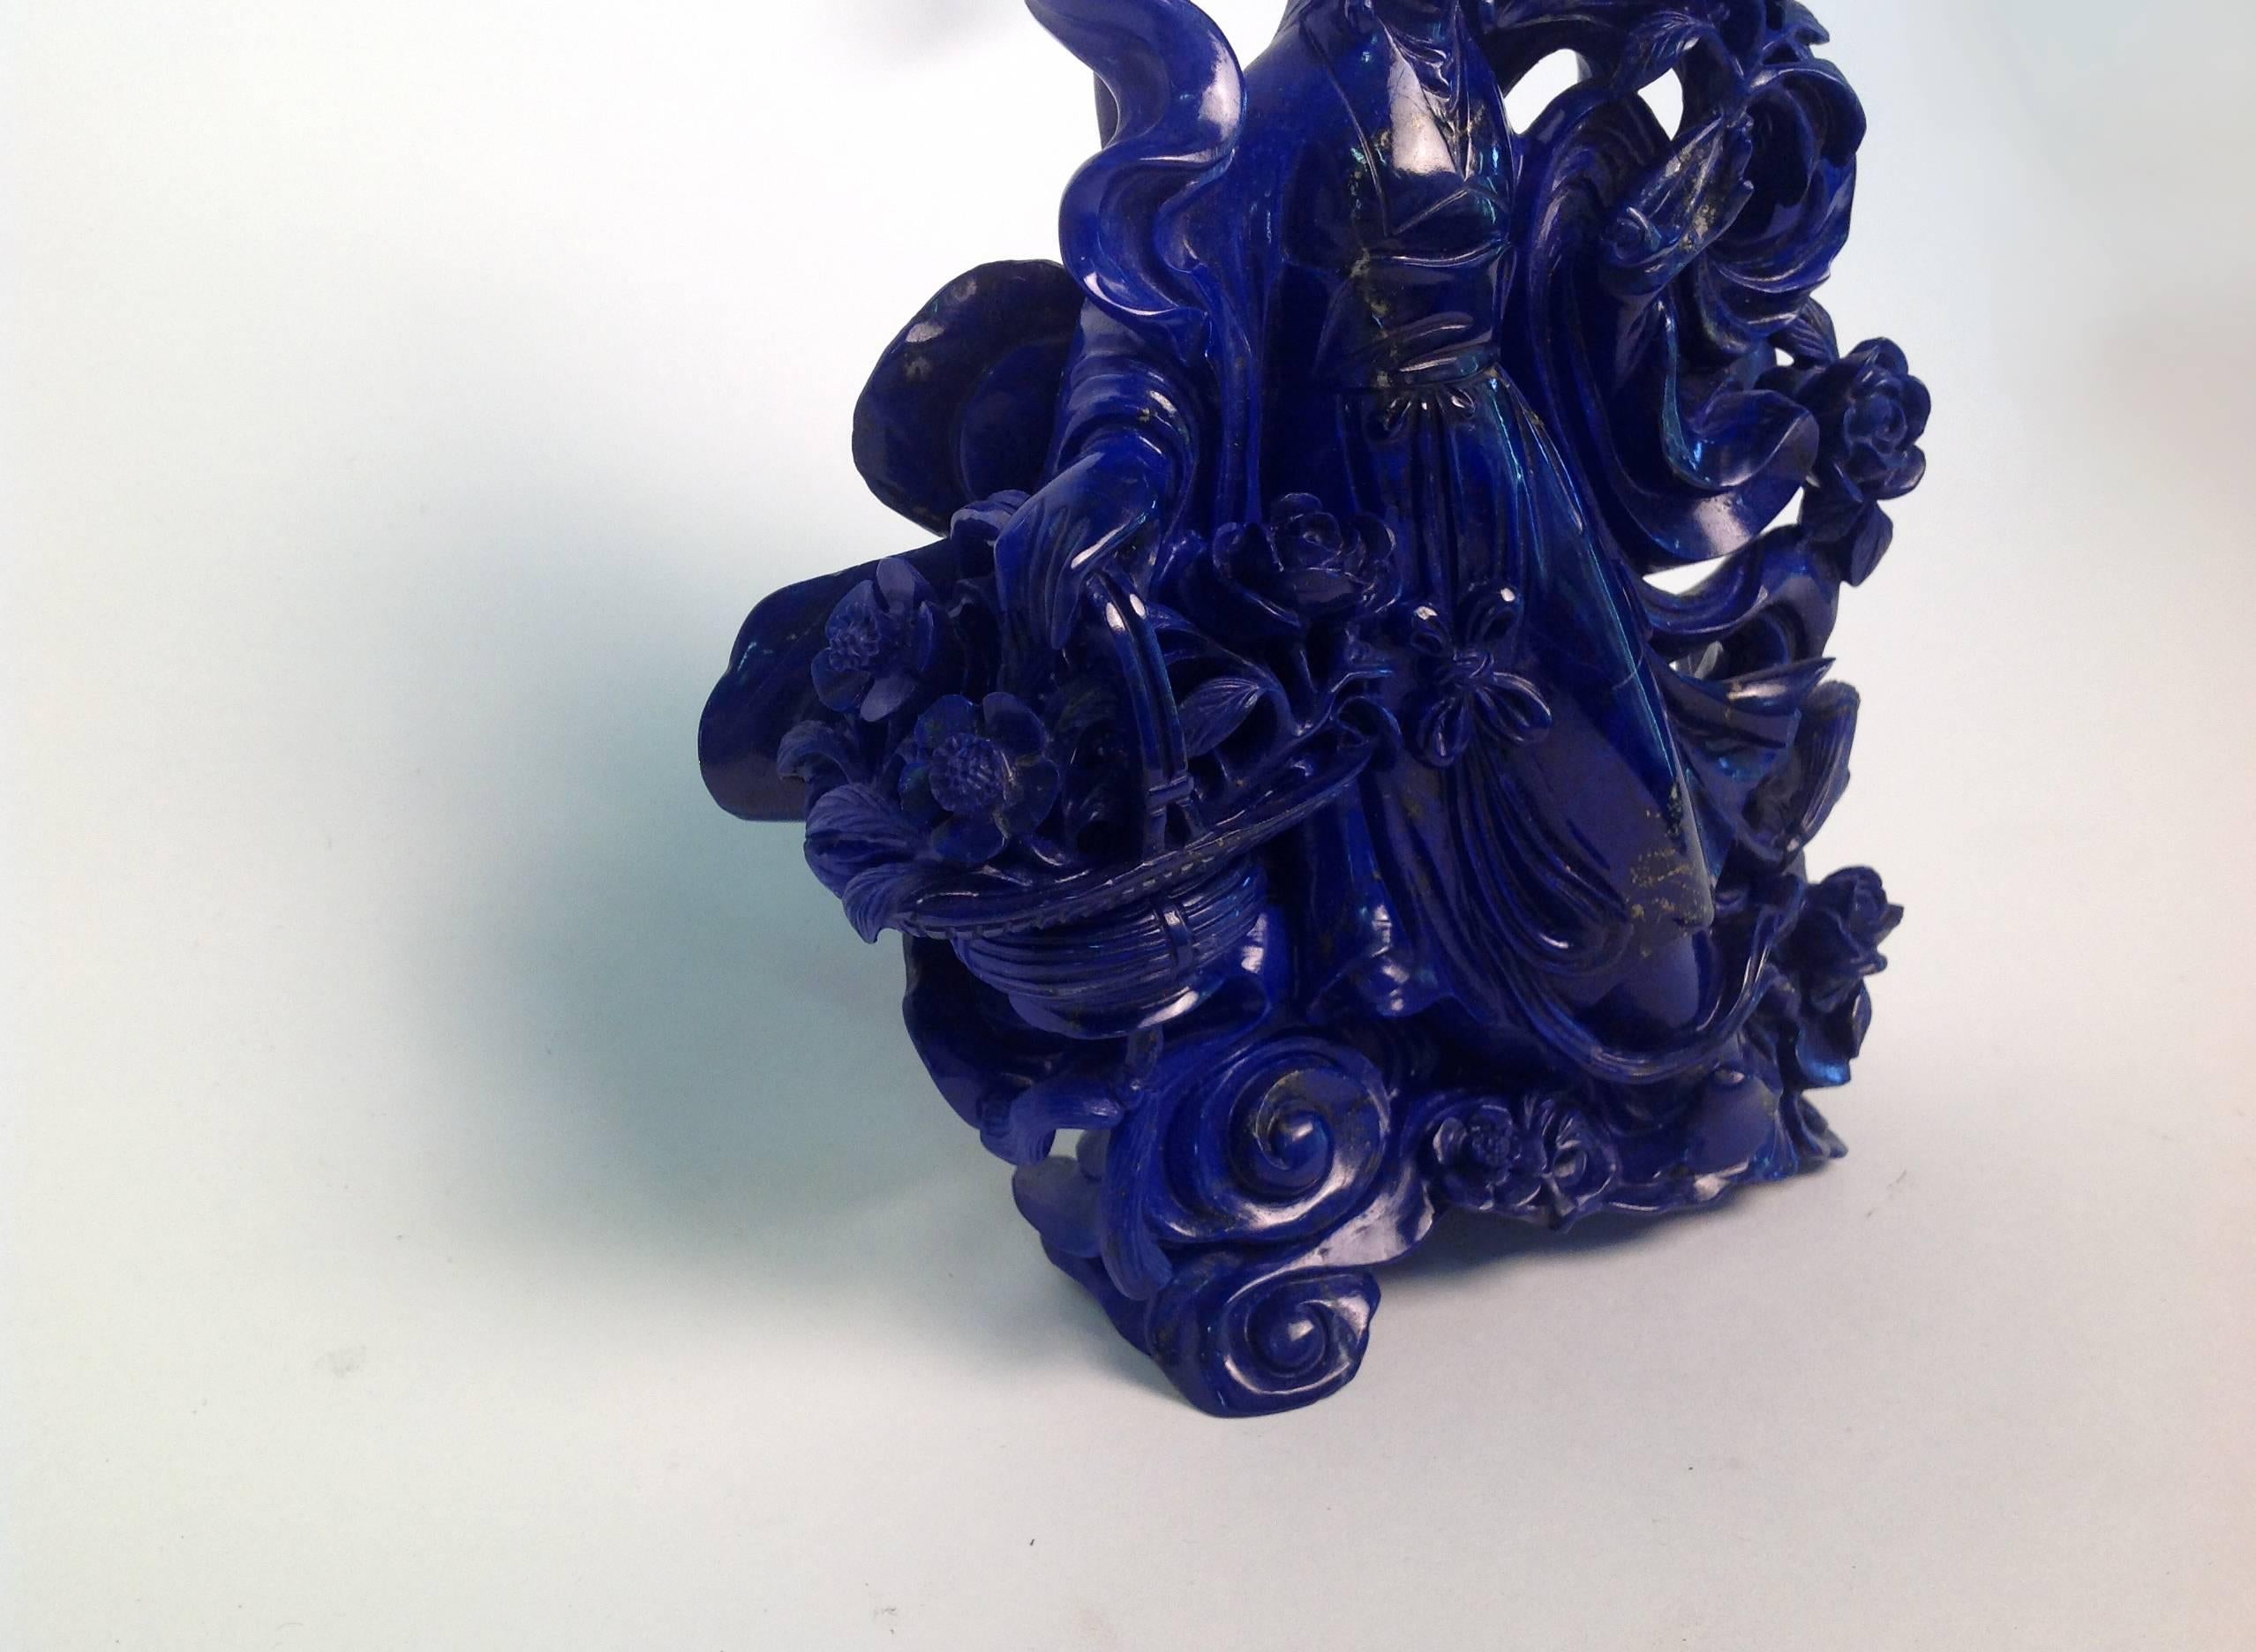 lapis lazuli statue